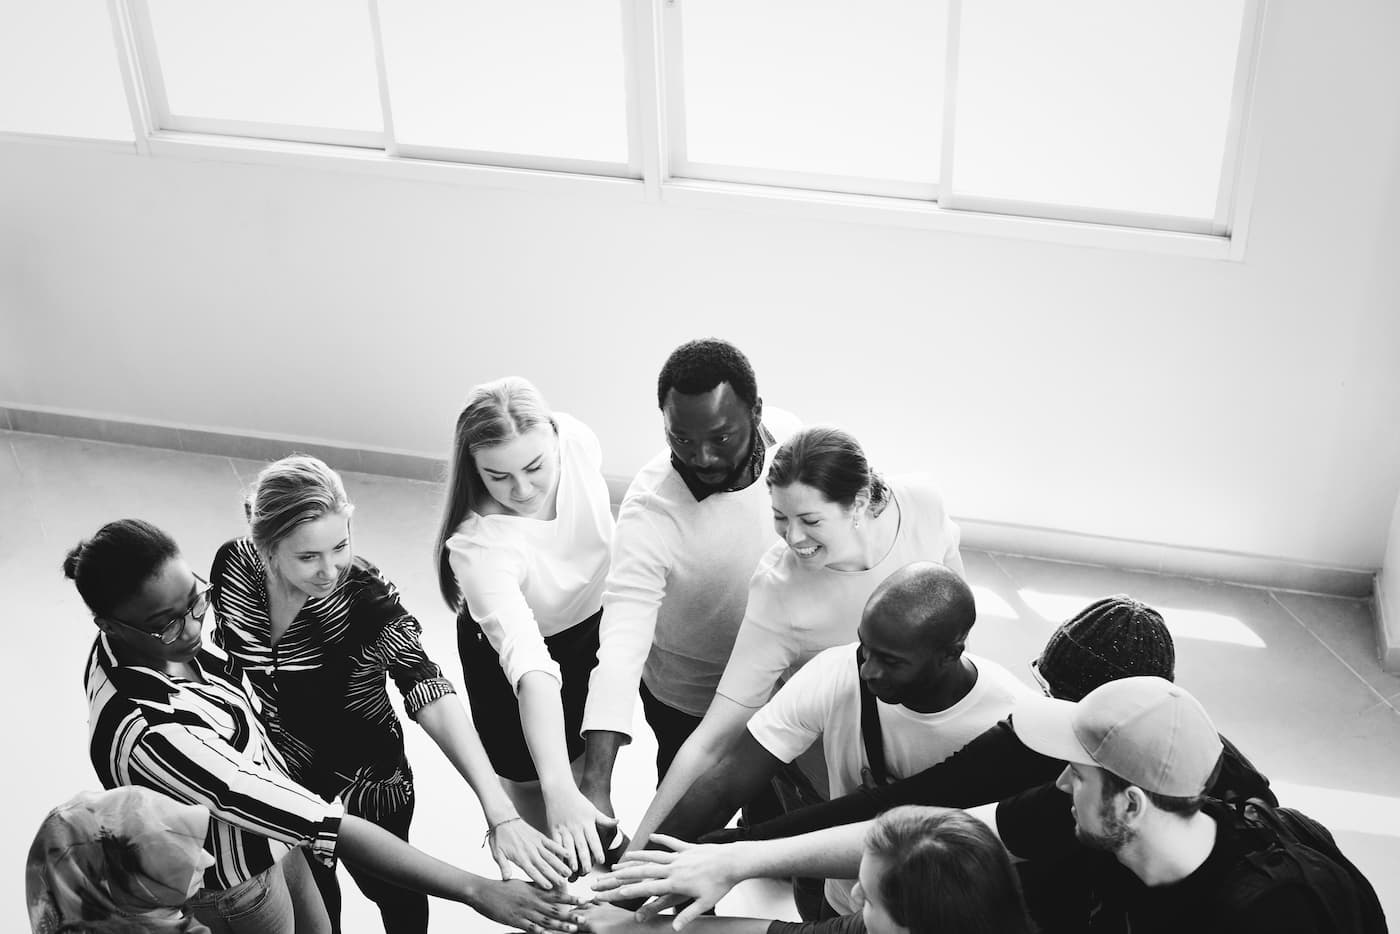 El team building puede transformar la cultura de tu empresa